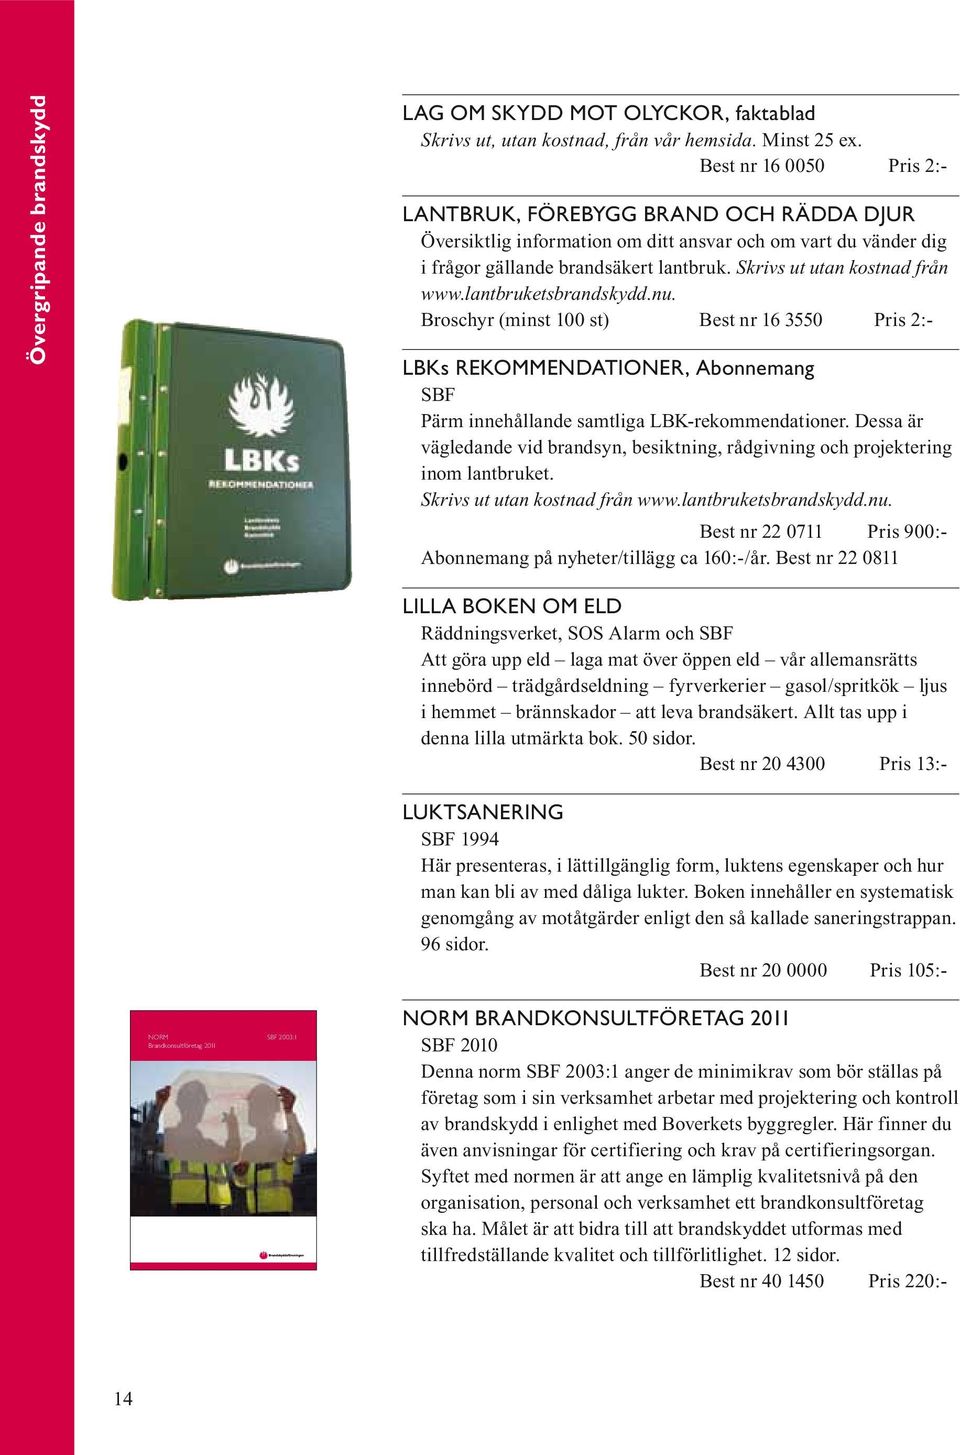 Skrivs ut utan kostnad från www.lantbruketsbrandskydd.nu. Broschyr (minst 100 st) Best nr 16 3550 Pris 2:- lbks rekommendationer, Abonnemang SBF Pärm innehållande samtliga LBK-rekommendationer.